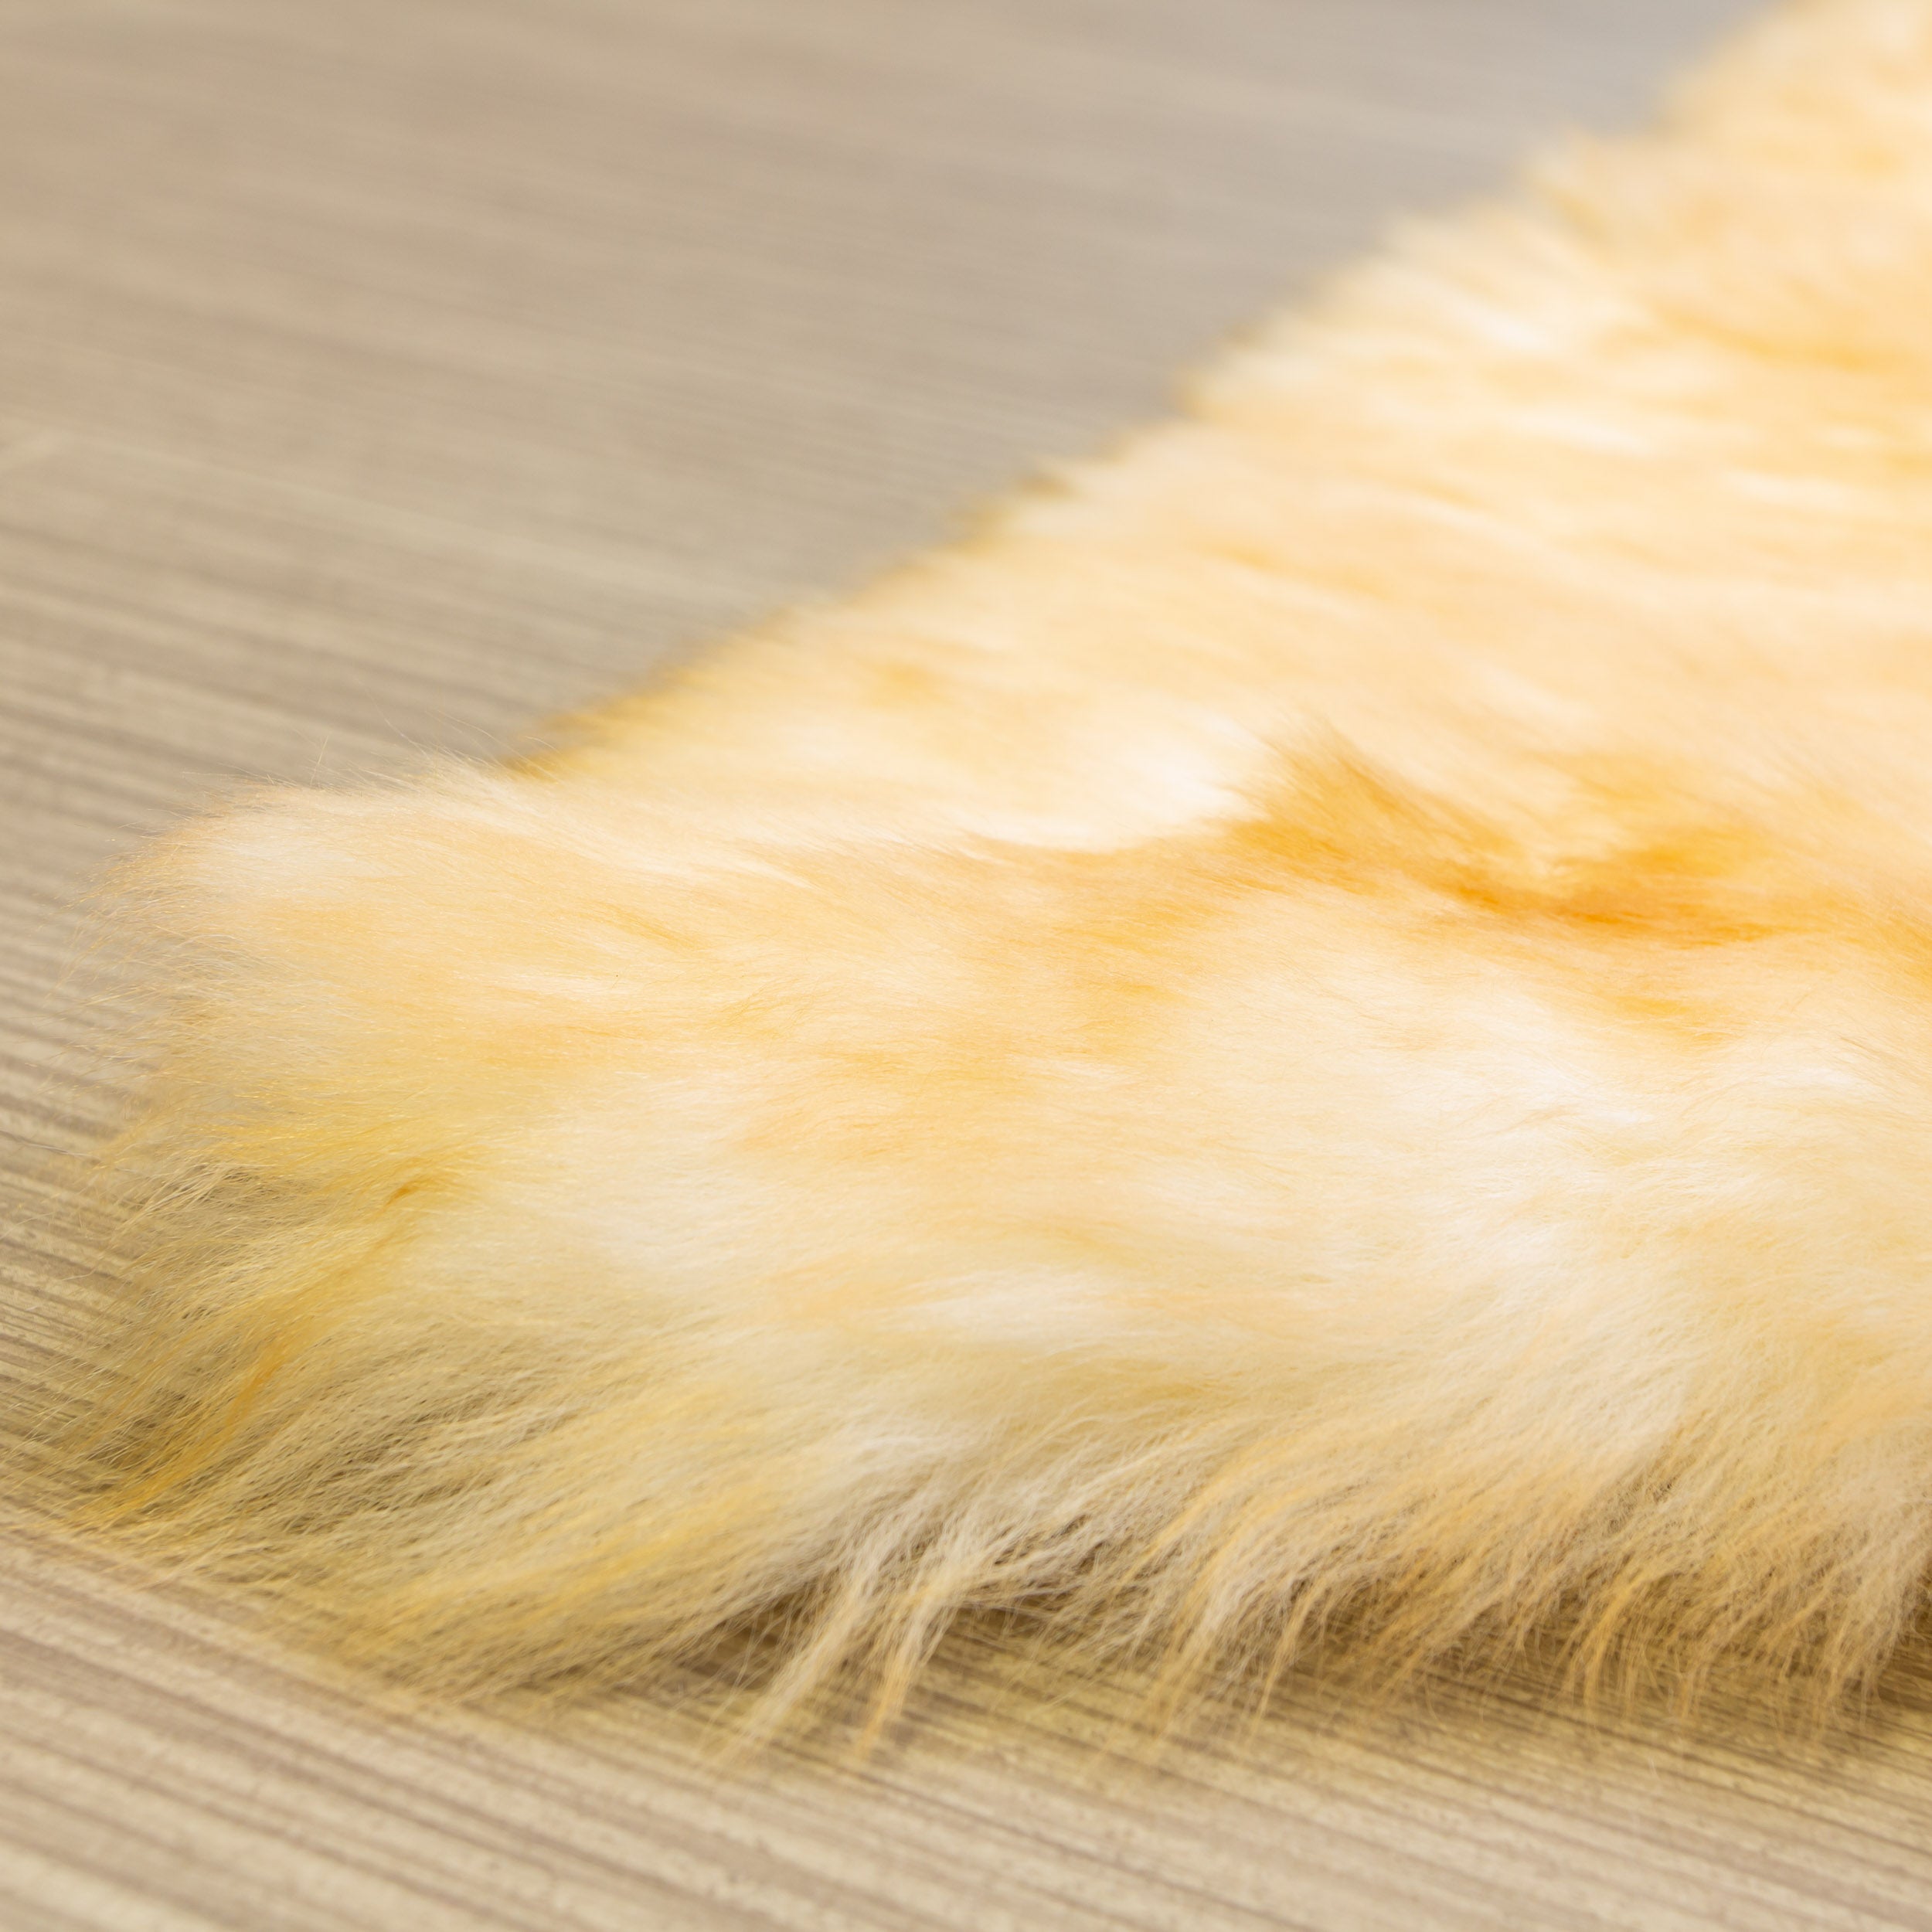 Natural Sheepskin Rug Shearling Fur Pelt #color_brown tips